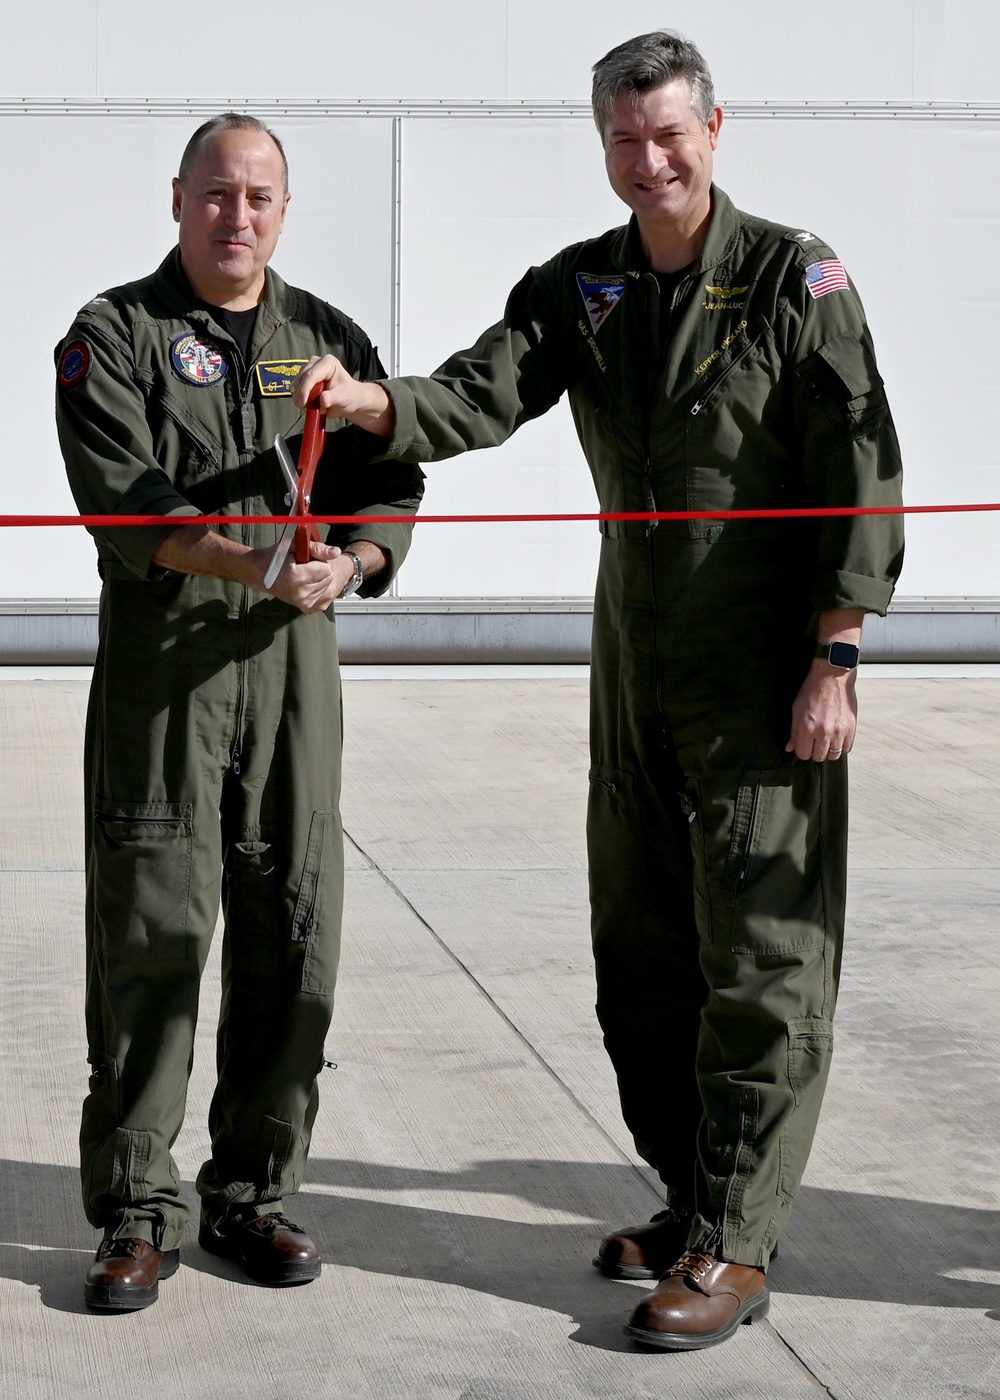 NAS Sigonella P-8 Hangar Ribbon Cutting